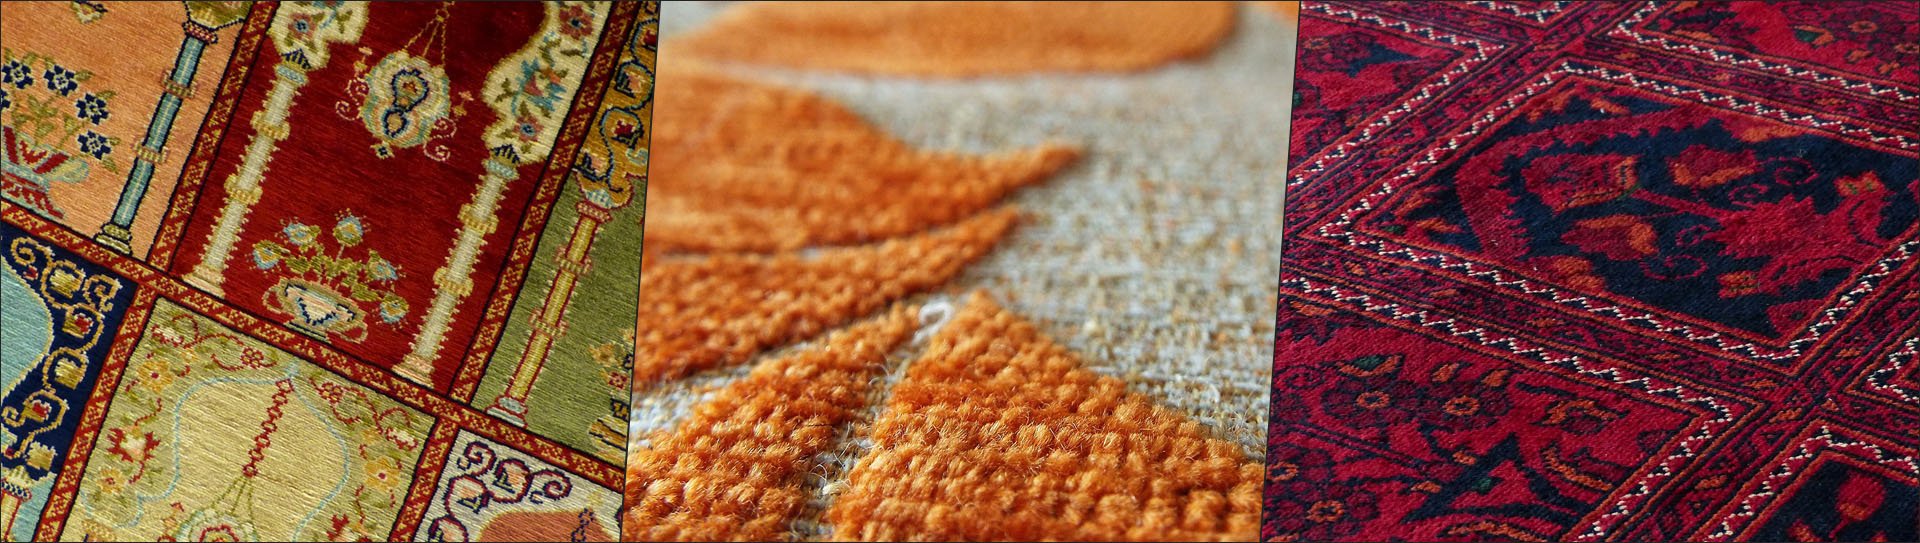 Traditionelle persiche Teppichwäsche / Teppichreinigung